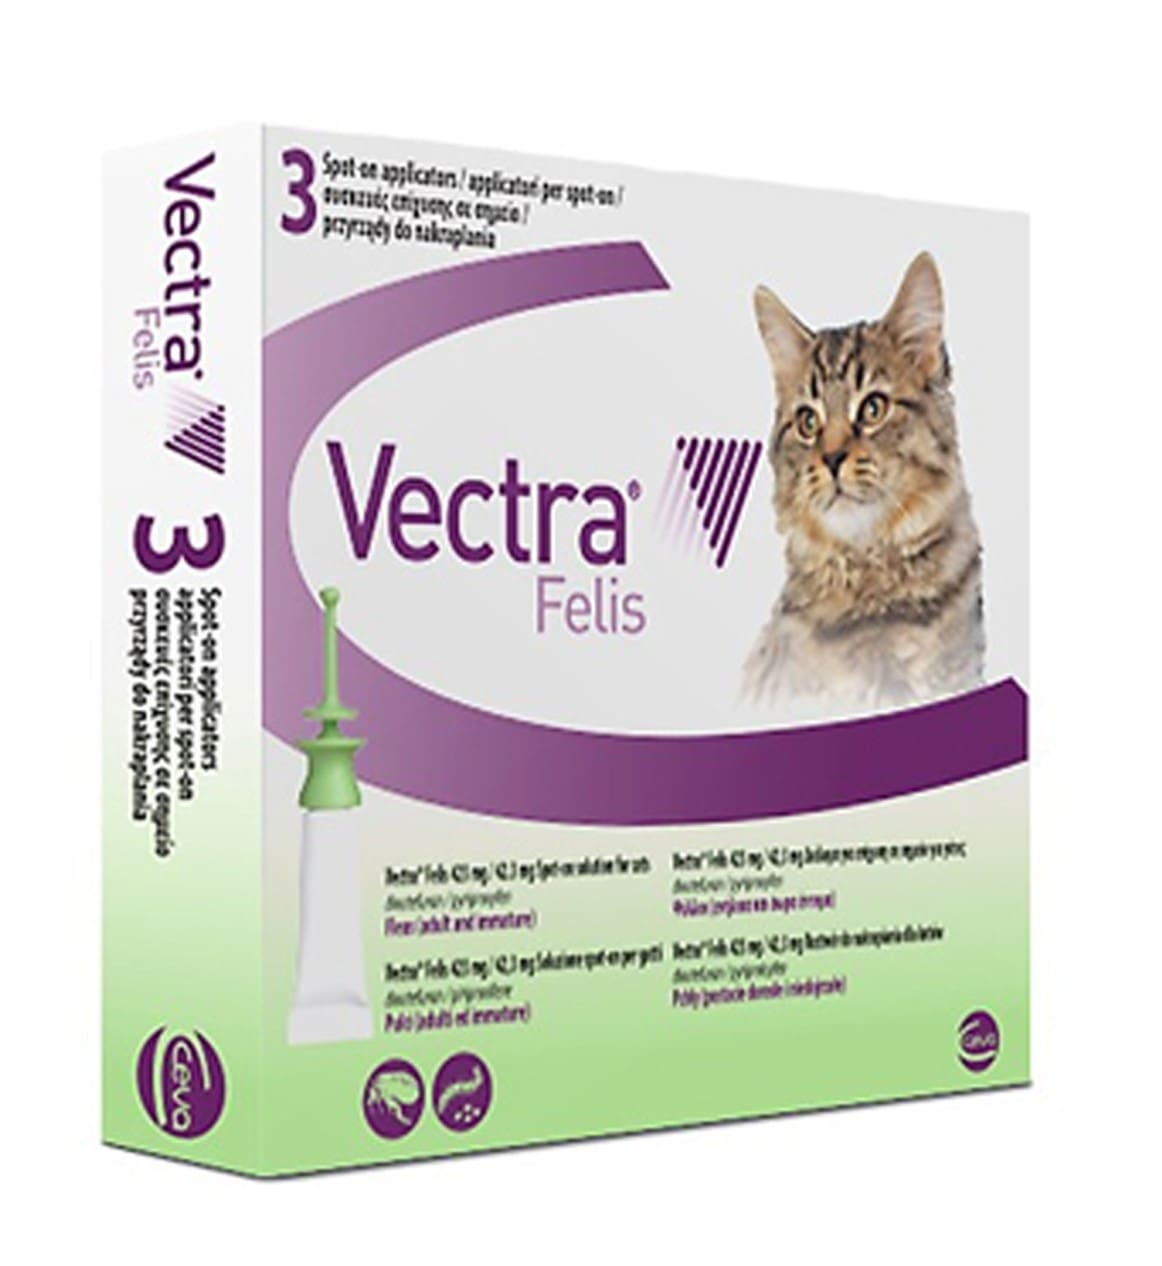 Ceva Vectra Felis Cat Spot On